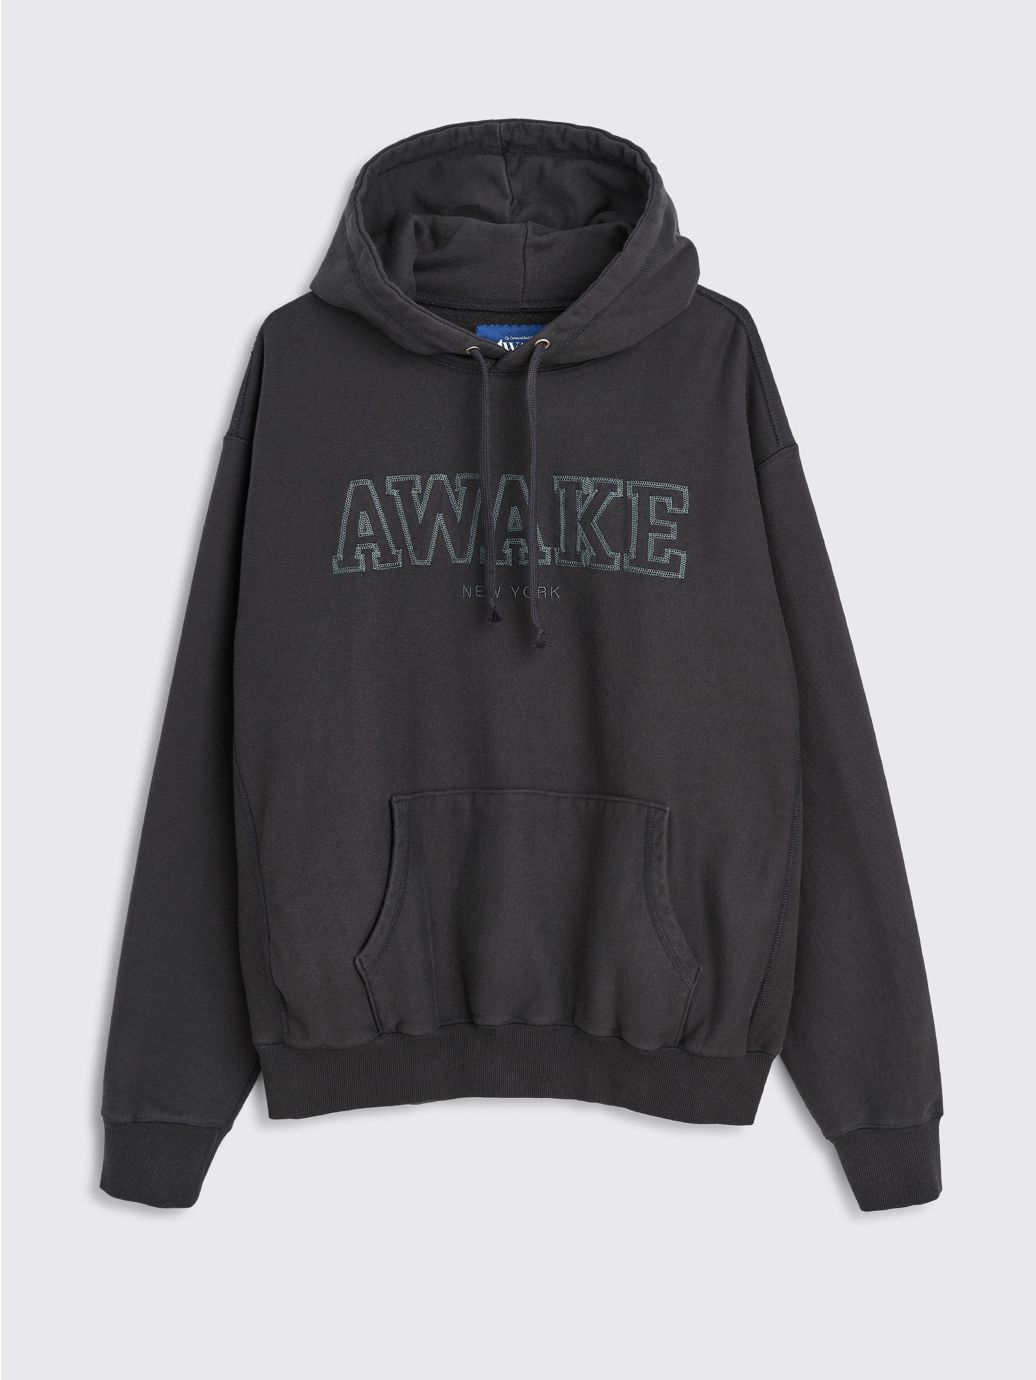 undefined | Awake NY Block Logo Hooded Sweatshirt Charcoal